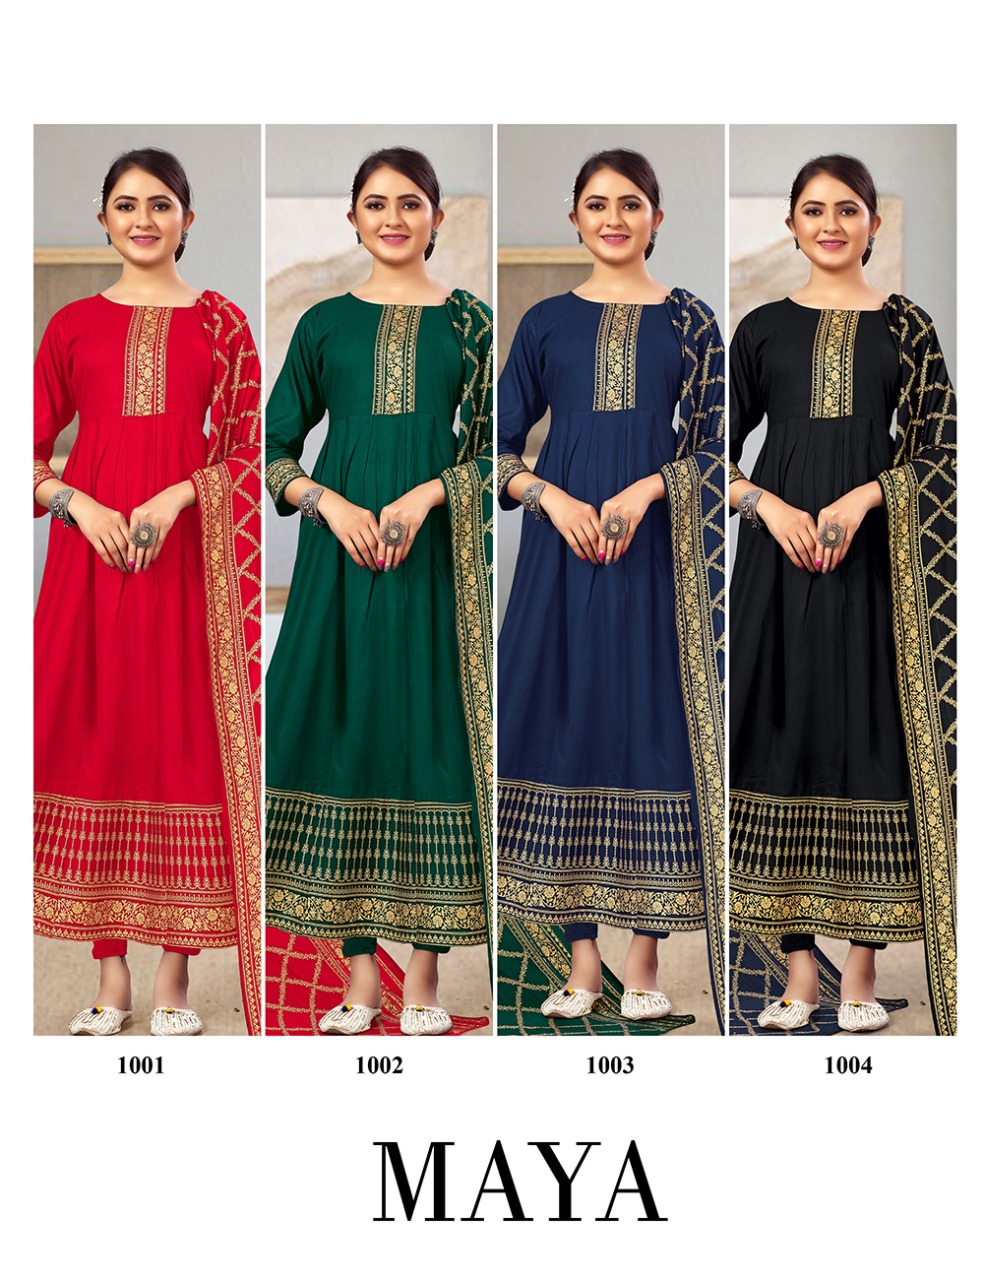 jinesh nx maya rayon beauiful colours kurti with dupatta catalog